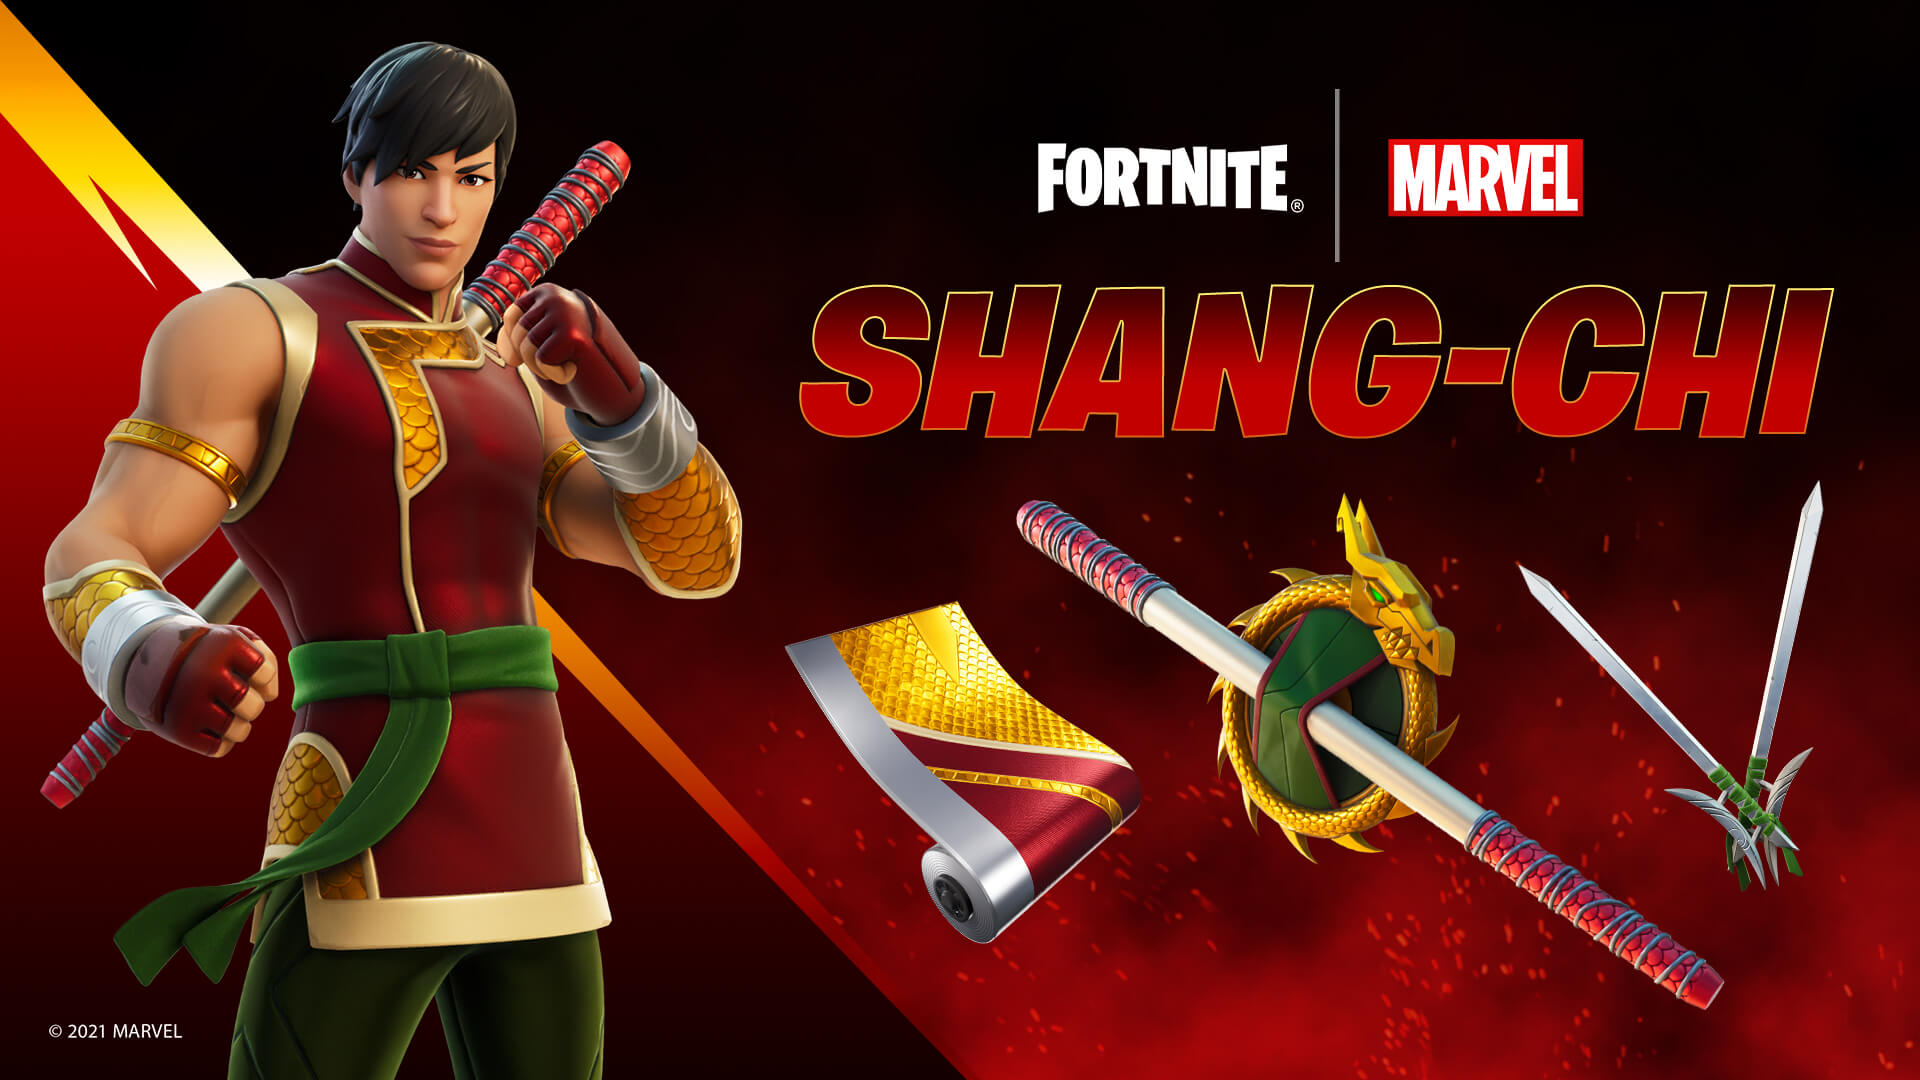 Marvel Martial Arts Master: Shang Chi Joins Fortnite's Item Shop